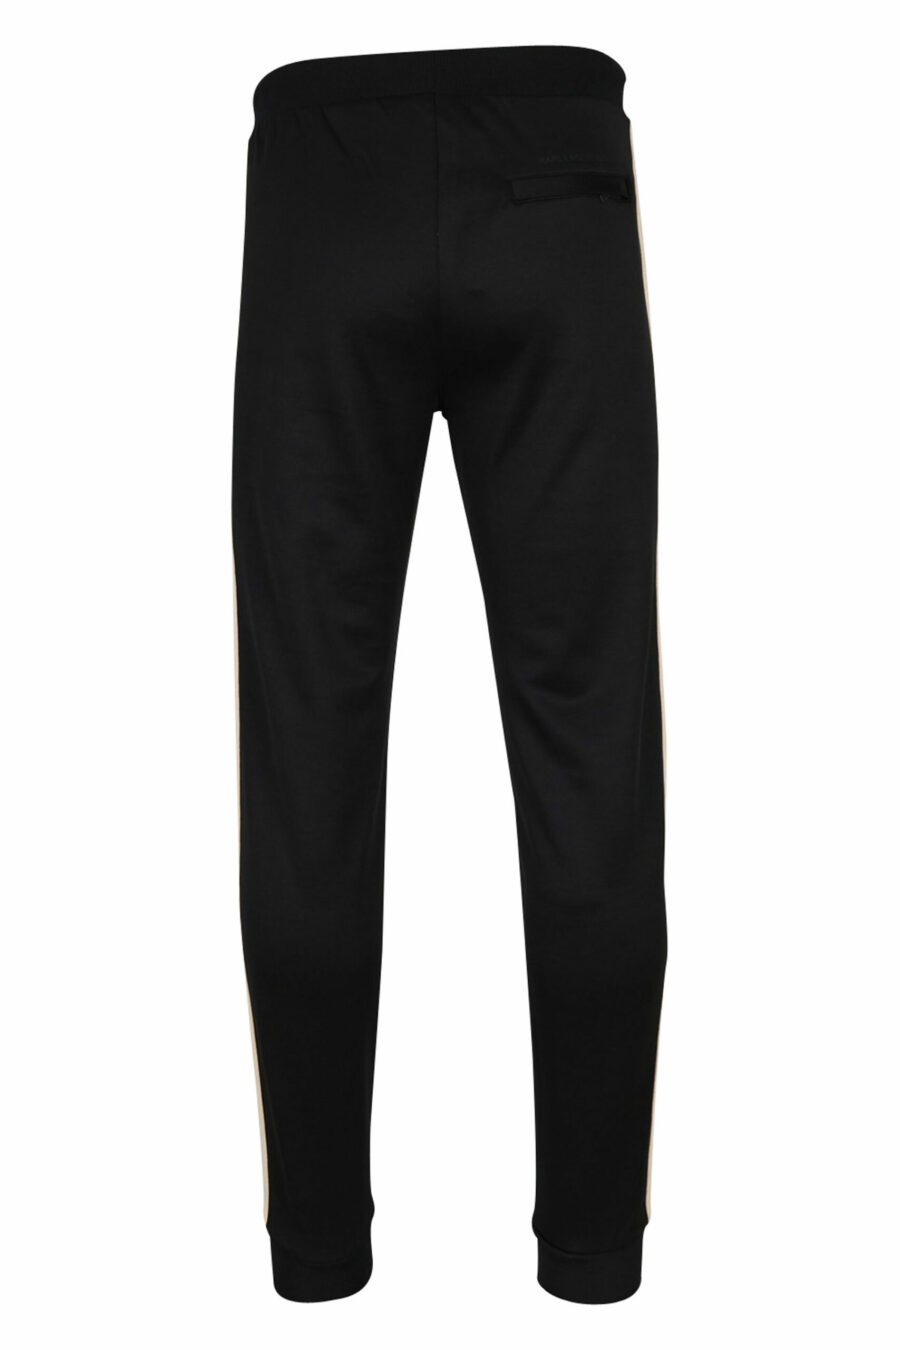 Pantalon noir avec bandes latérales minilogues et beiges - 4062226395175 2 échelles